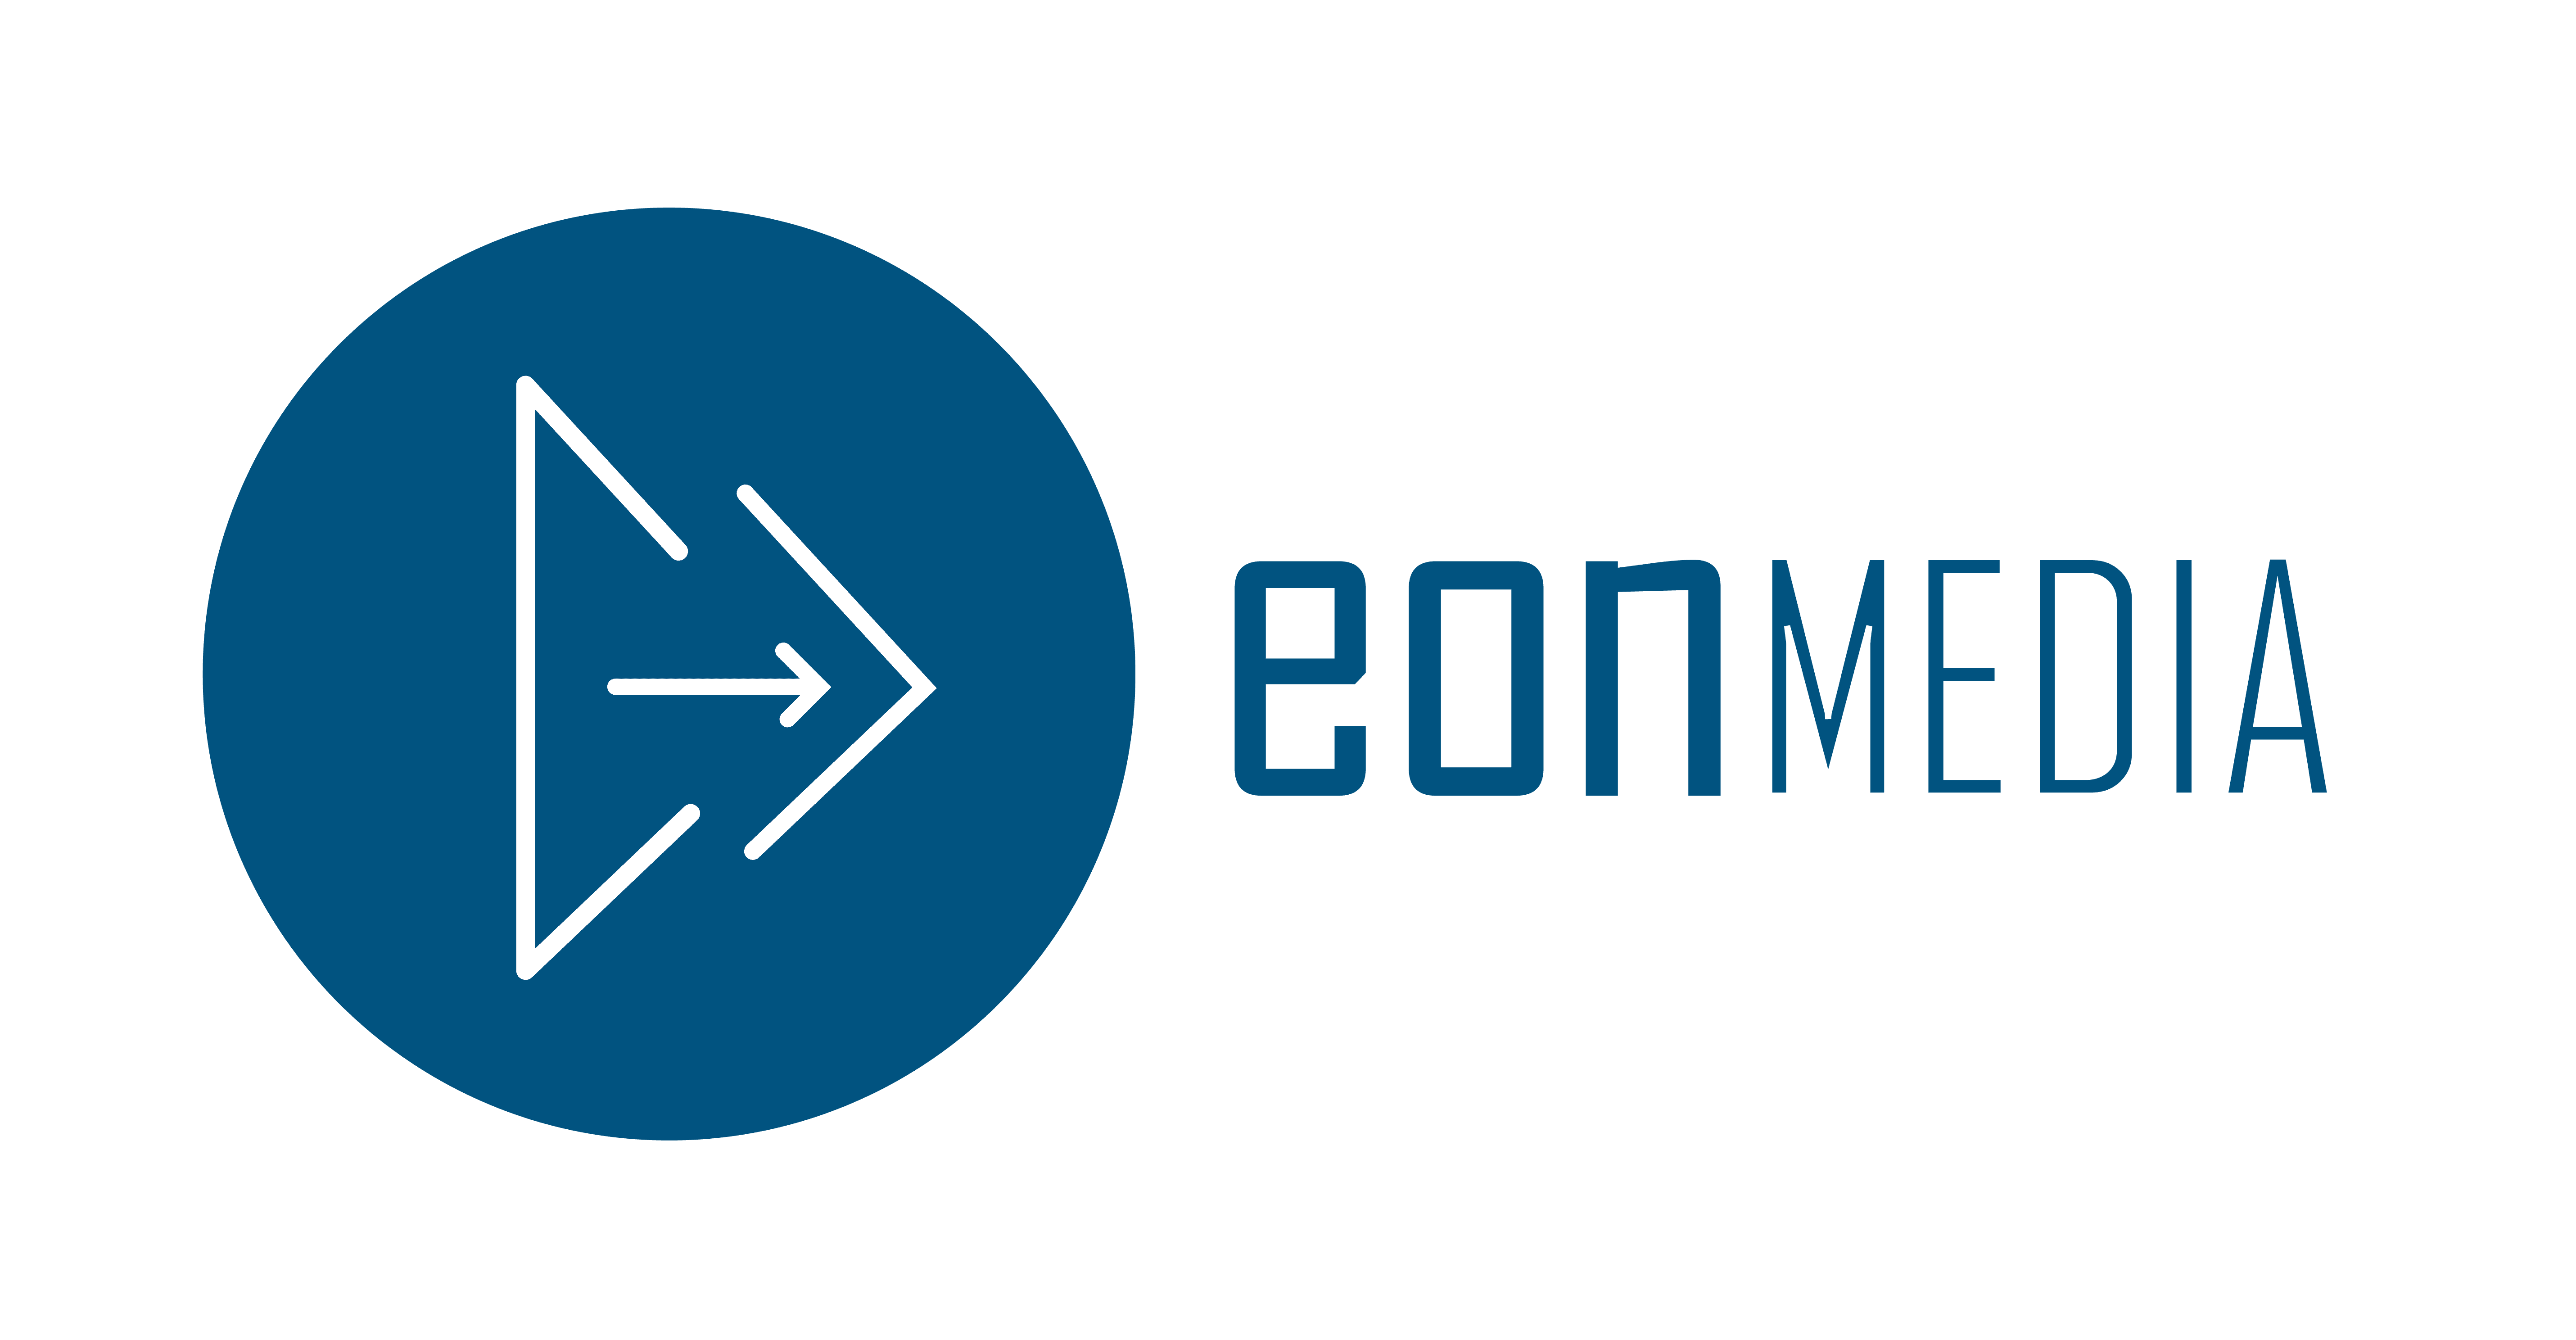 EON Media Corp.